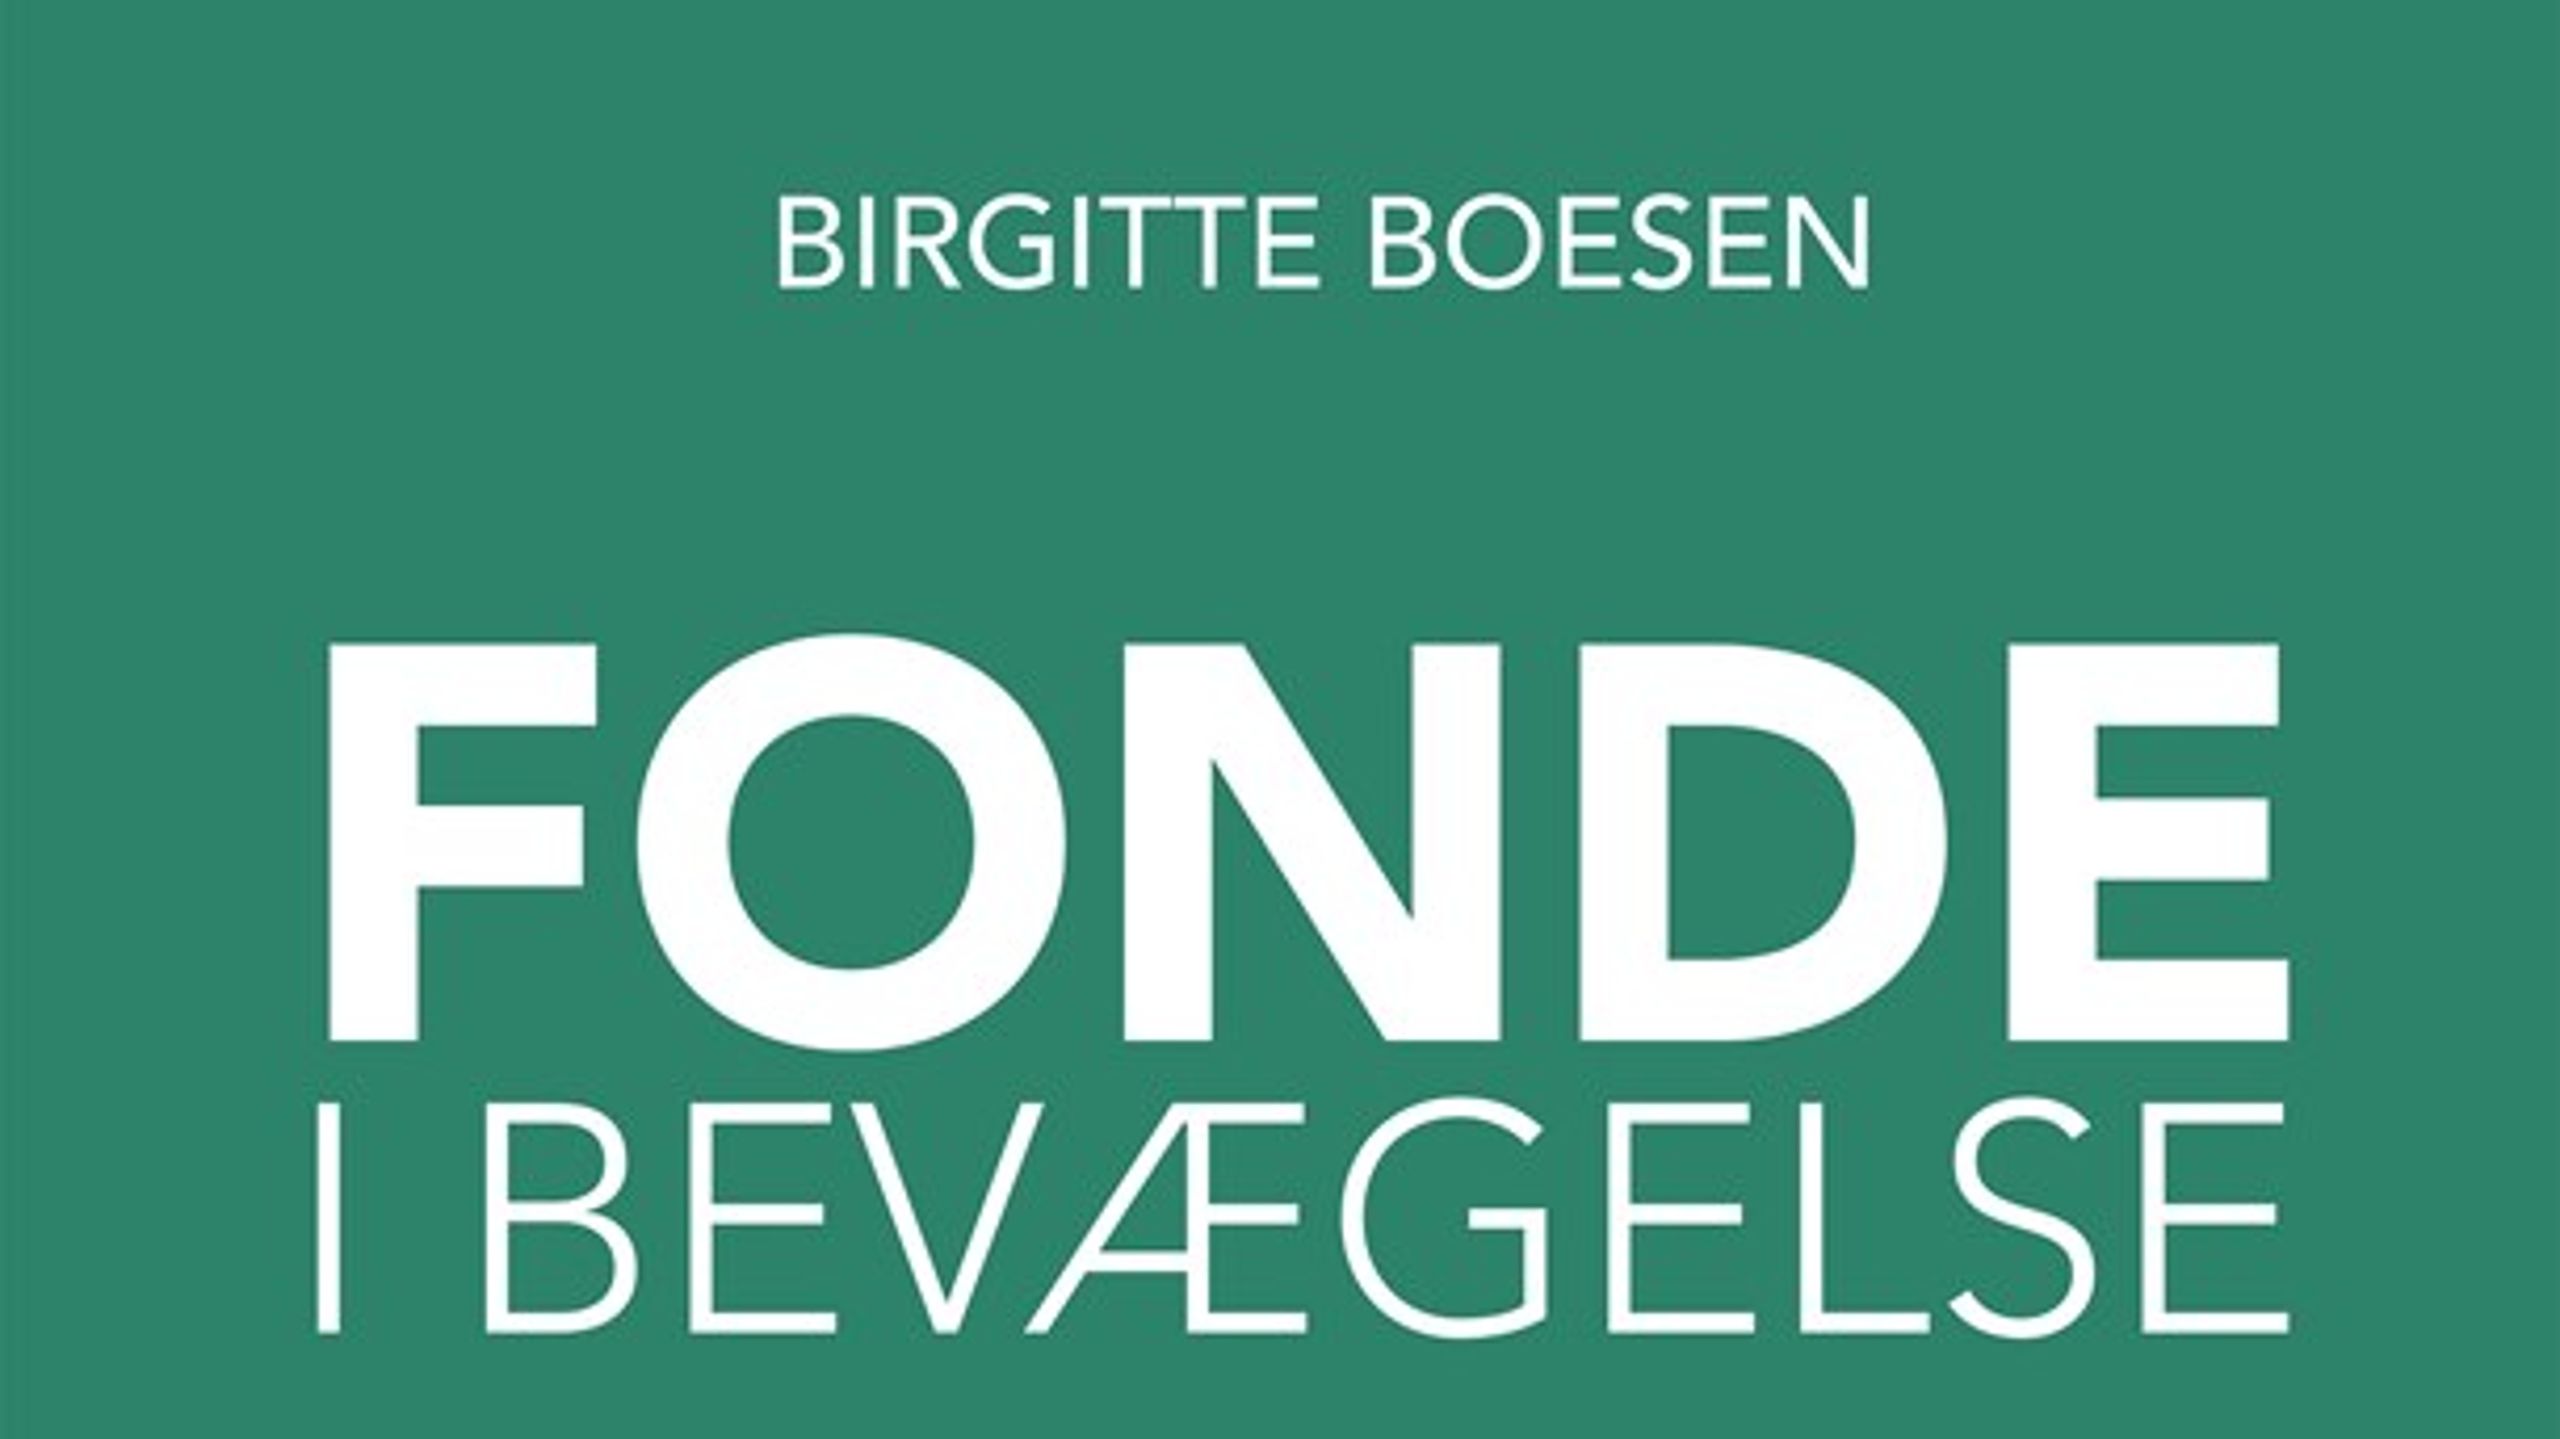 Birgitte Boesens nye bog 'Fonde i bevægelse' får rosende ord med på vejen af to anmeldere for dens dybe indsigt i fondsverdenen. Dog savnes der et større fokus på debatten om&nbsp;betydningen af&nbsp;fondenes professionalisering, lyder det fra en af anmelderne.